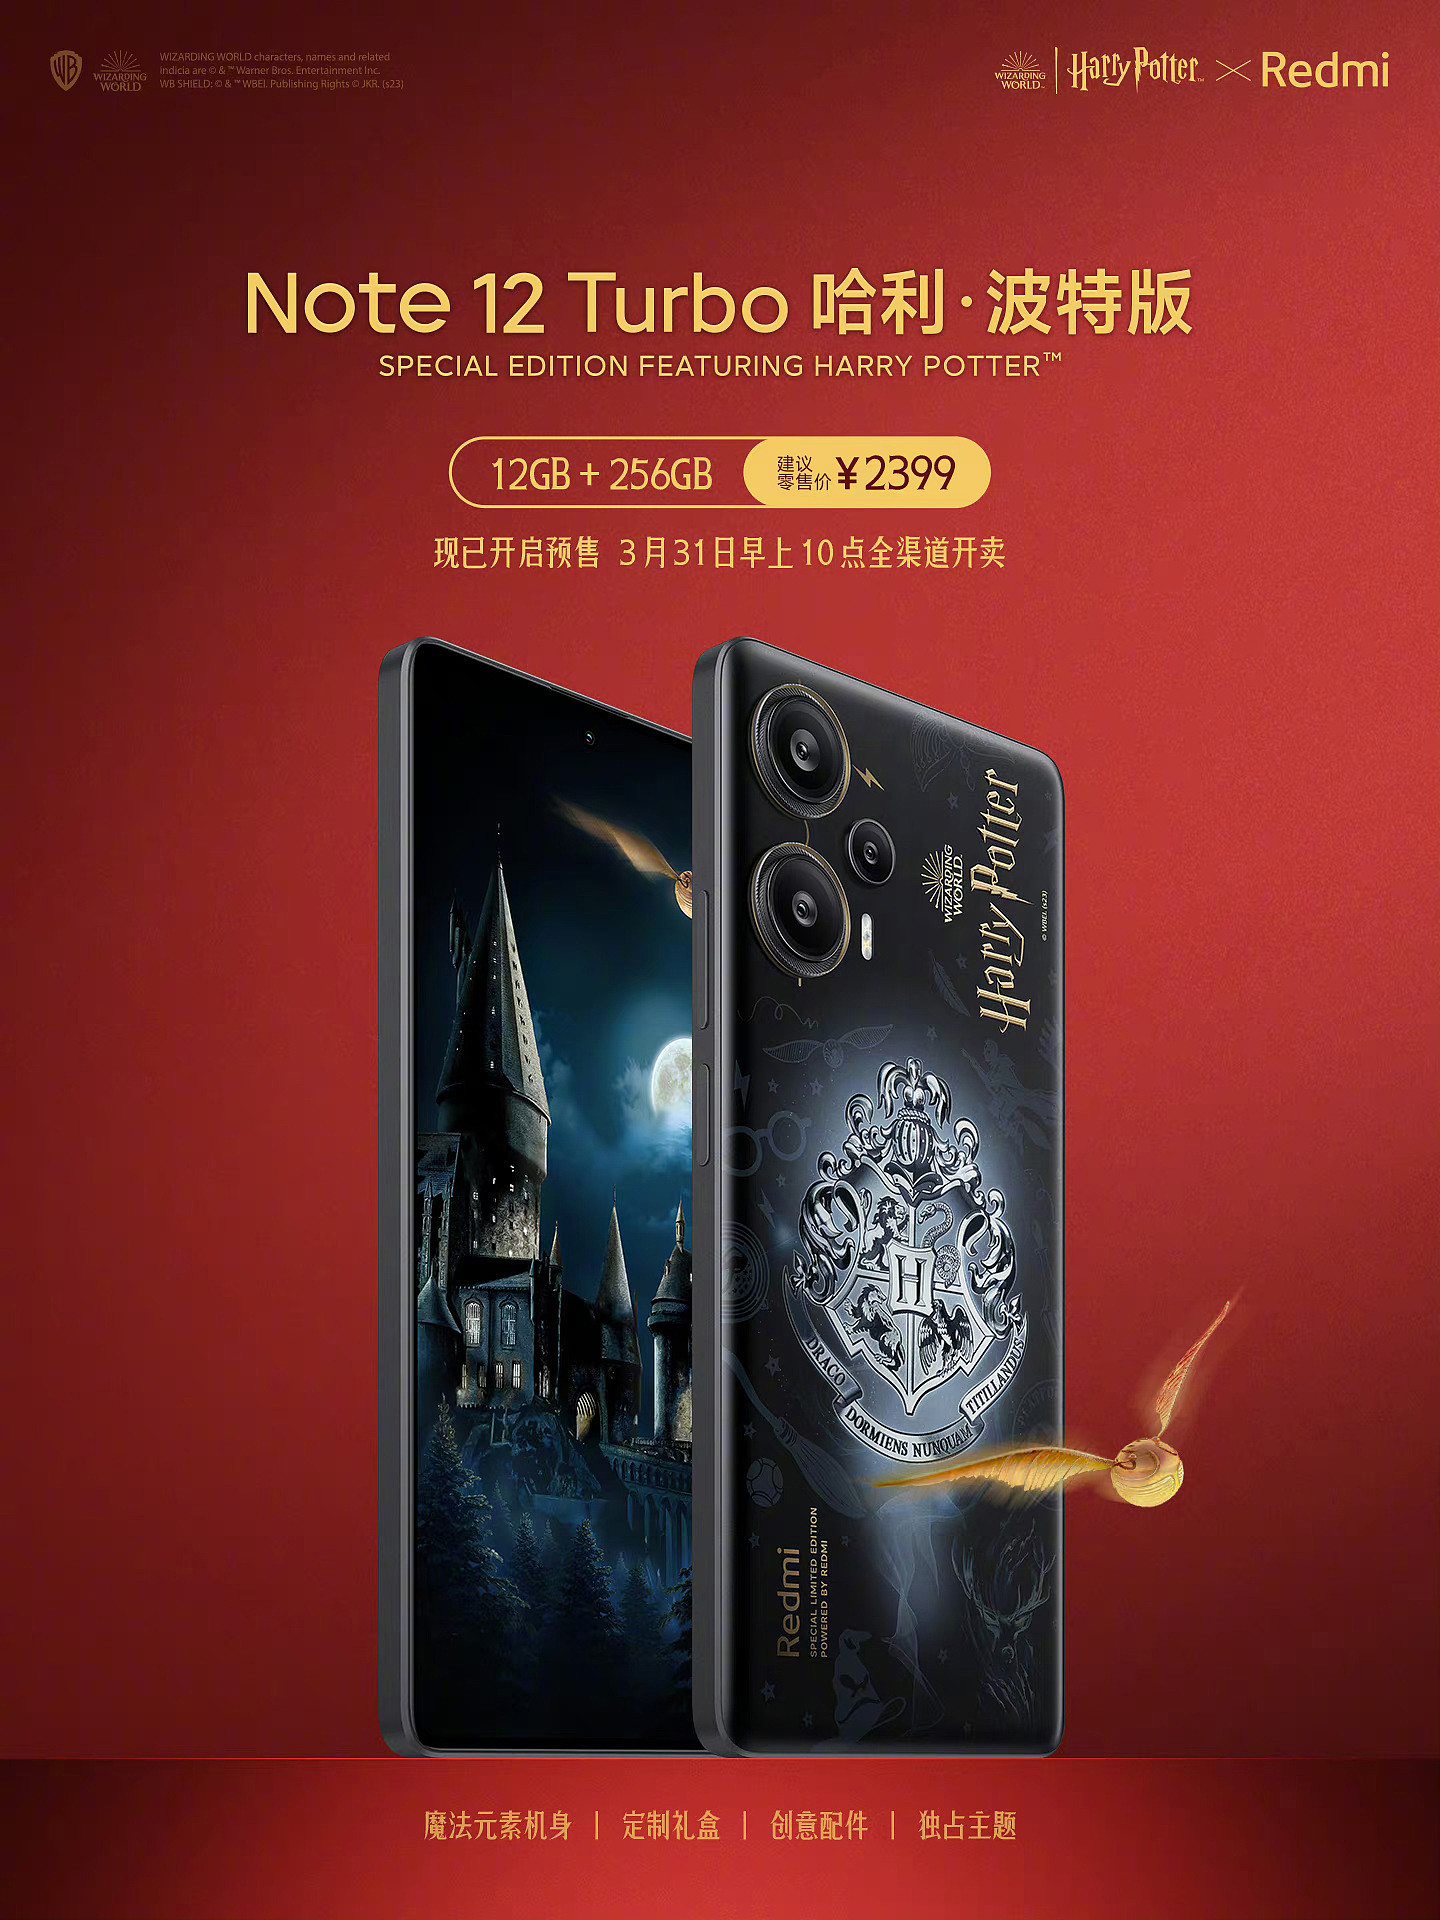 6 期免息 + 赠 1 年碎屏保：Redmi Note 12 Turbo 手机京东预售 - 8